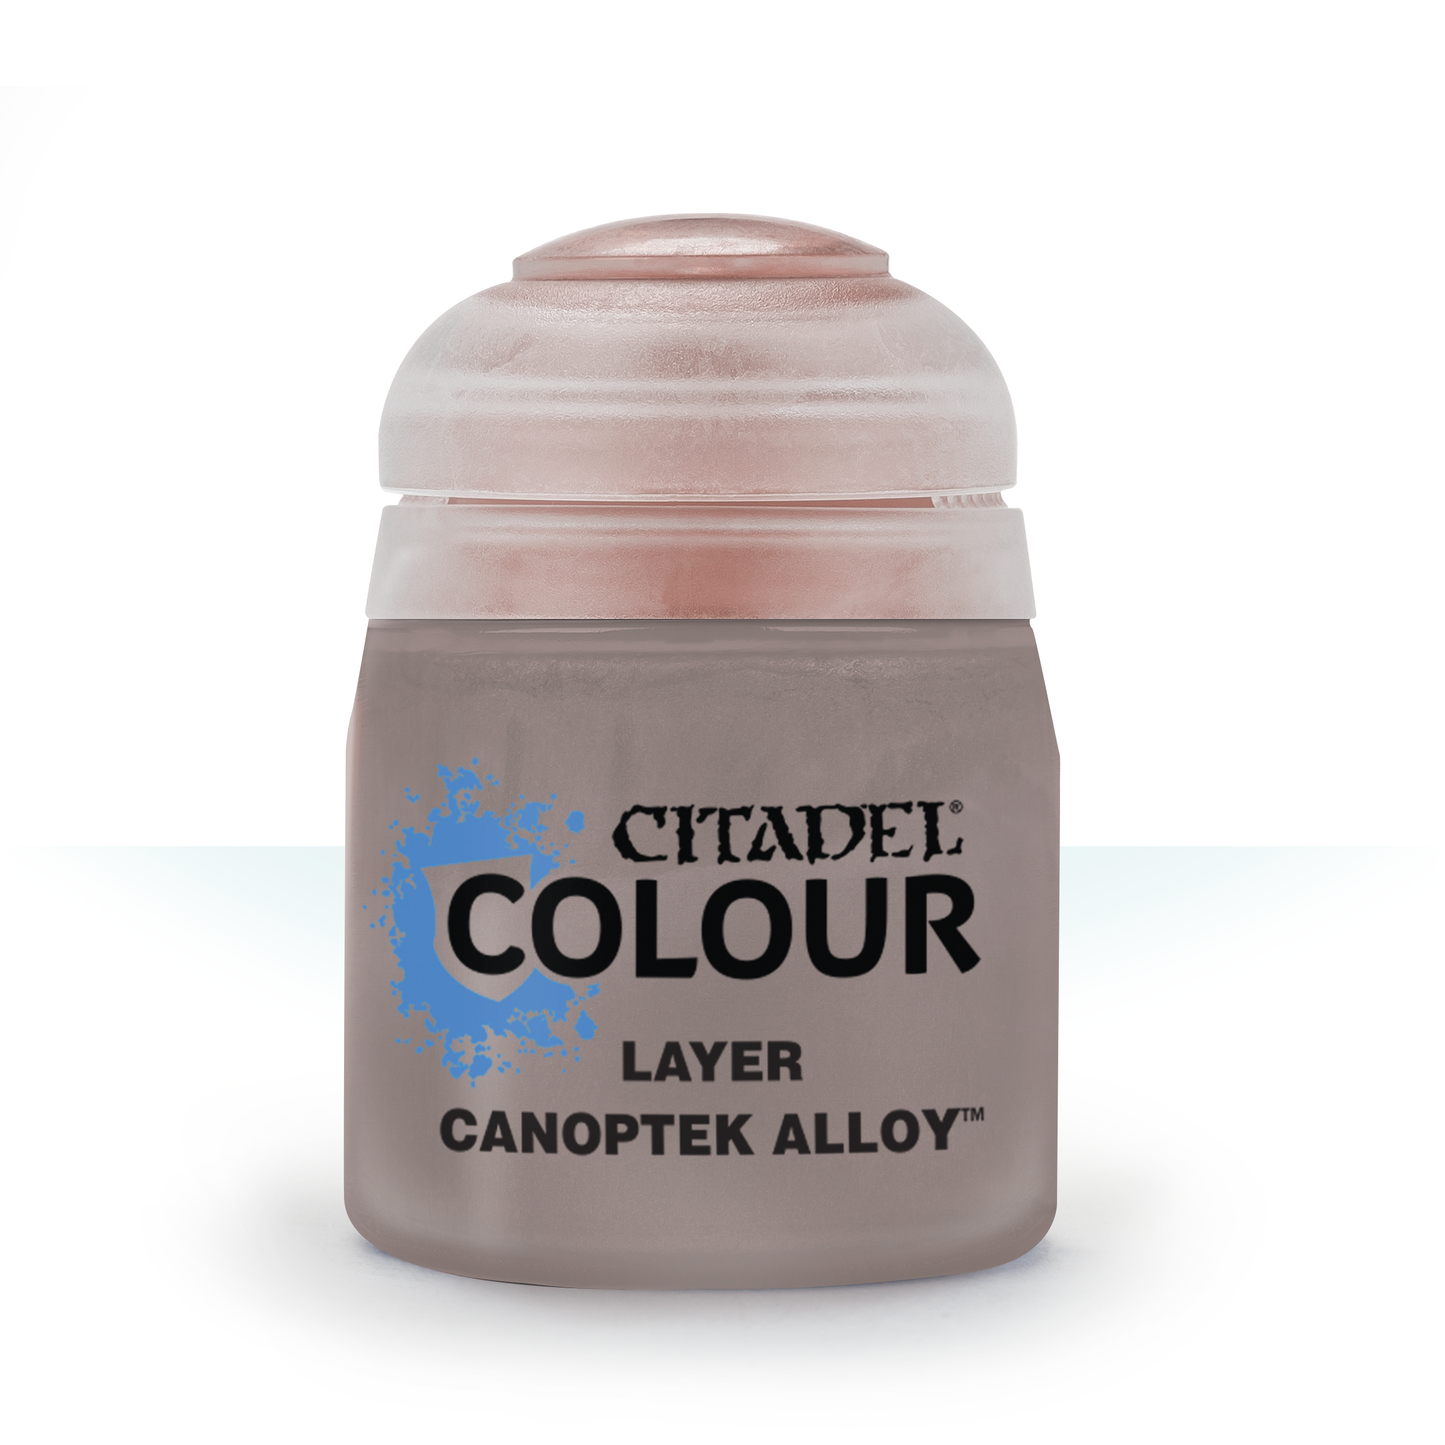 Citadel Colour - Canoptek Alloy Layer Paint